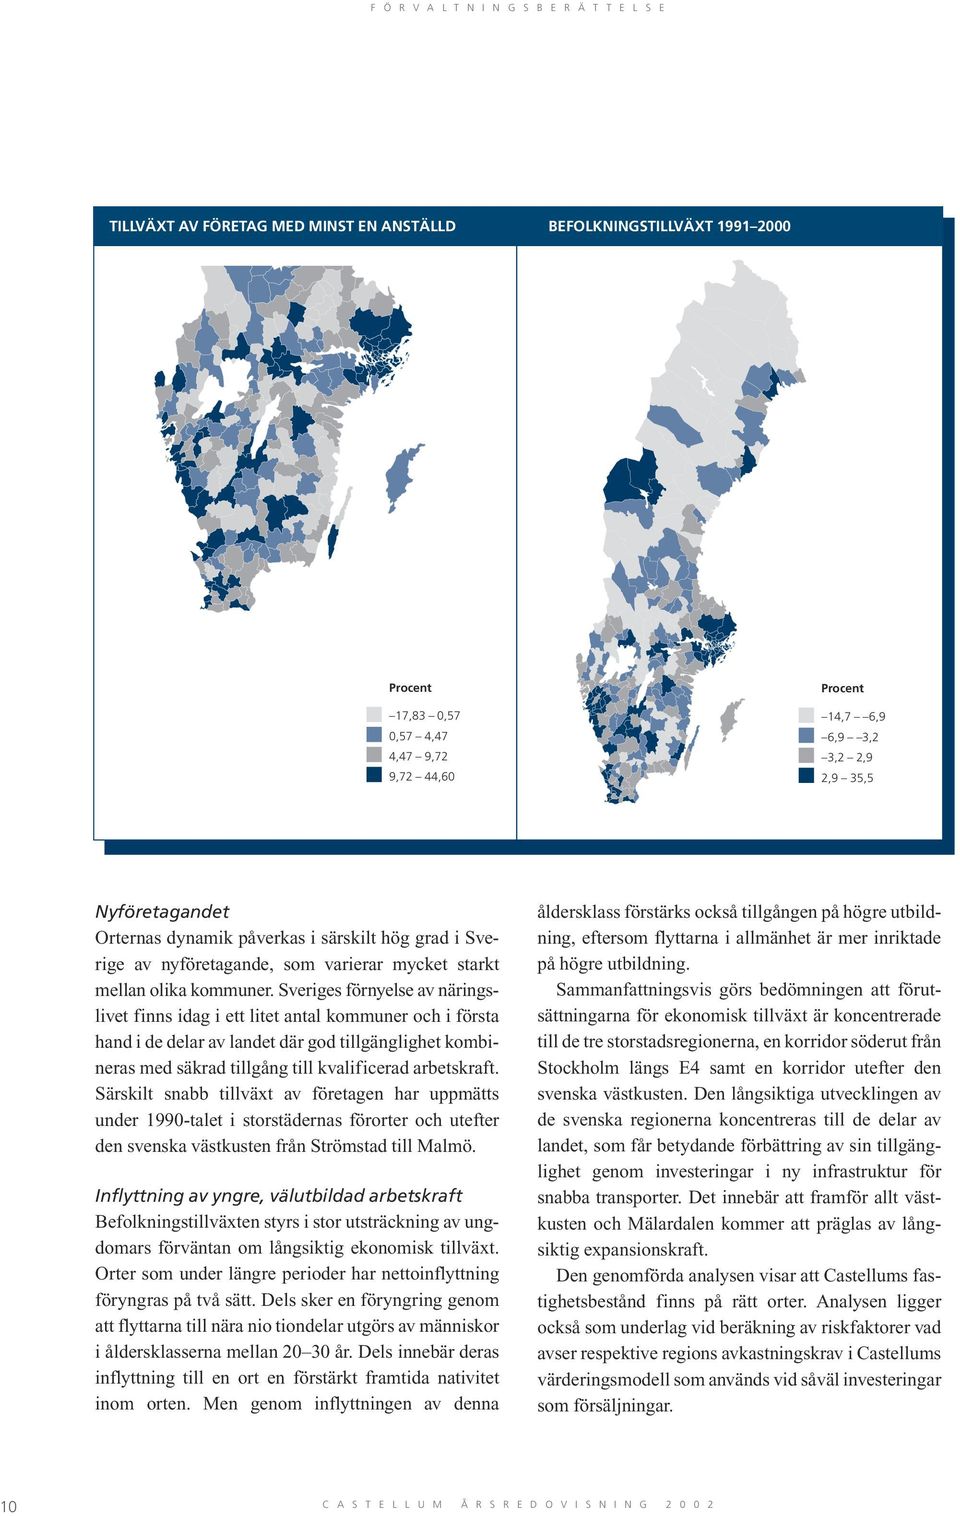 Sveriges förnyelse av näringslivet finns idag i ett litet antal kommuner och i första hand i de delar av landet där god tillgänglighet kombineras med säkrad tillgång till kvalificerad arbetskraft.